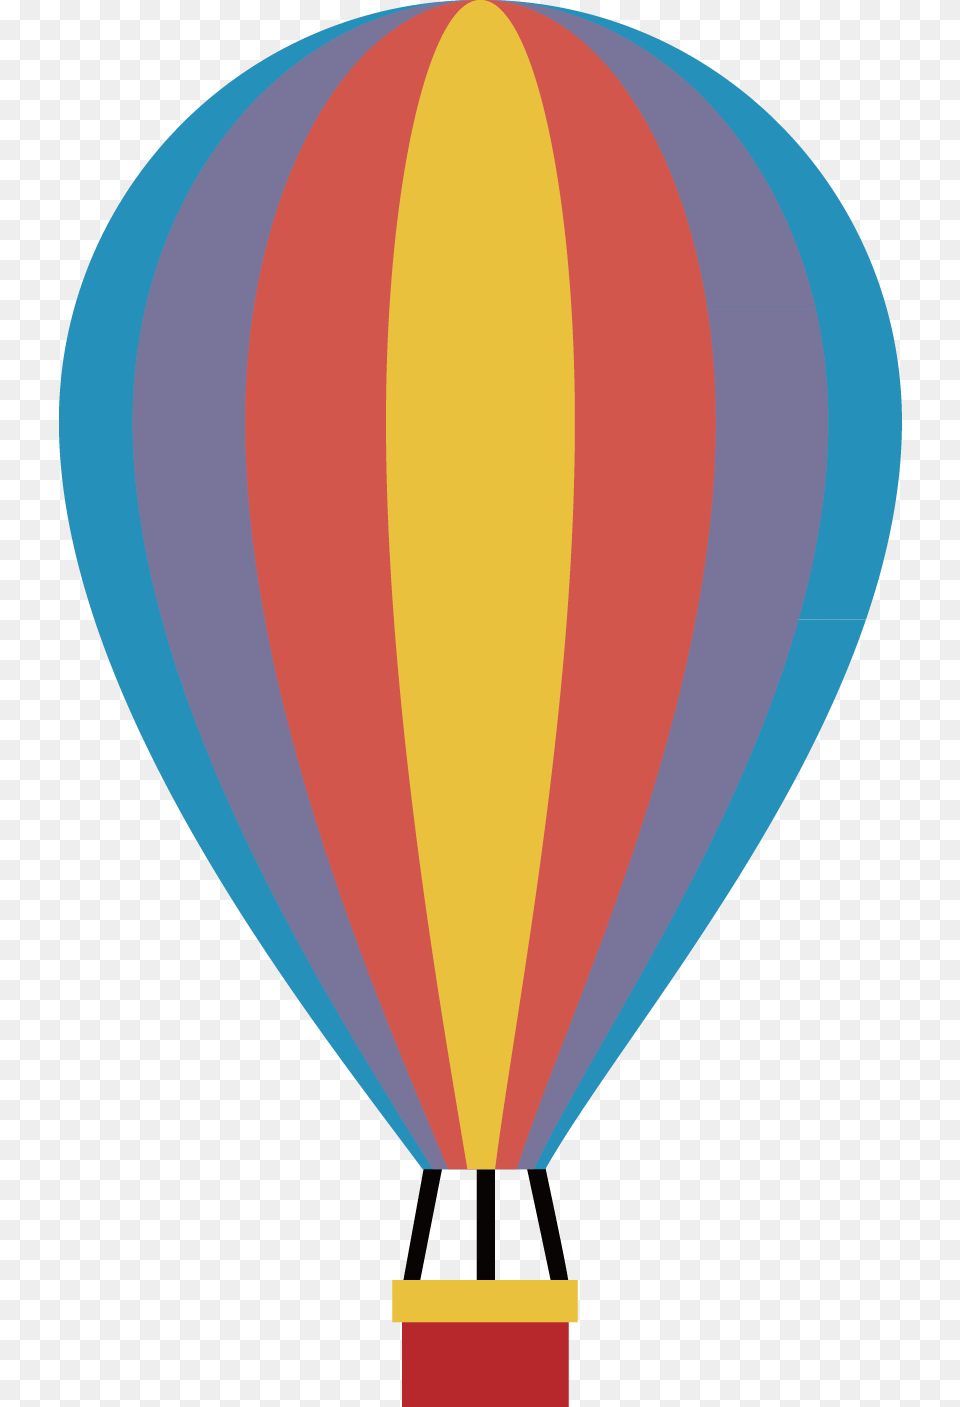 Hot Air Balloon Balloon Air Vector, Aircraft, Hot Air Balloon, Transportation, Vehicle Free Png